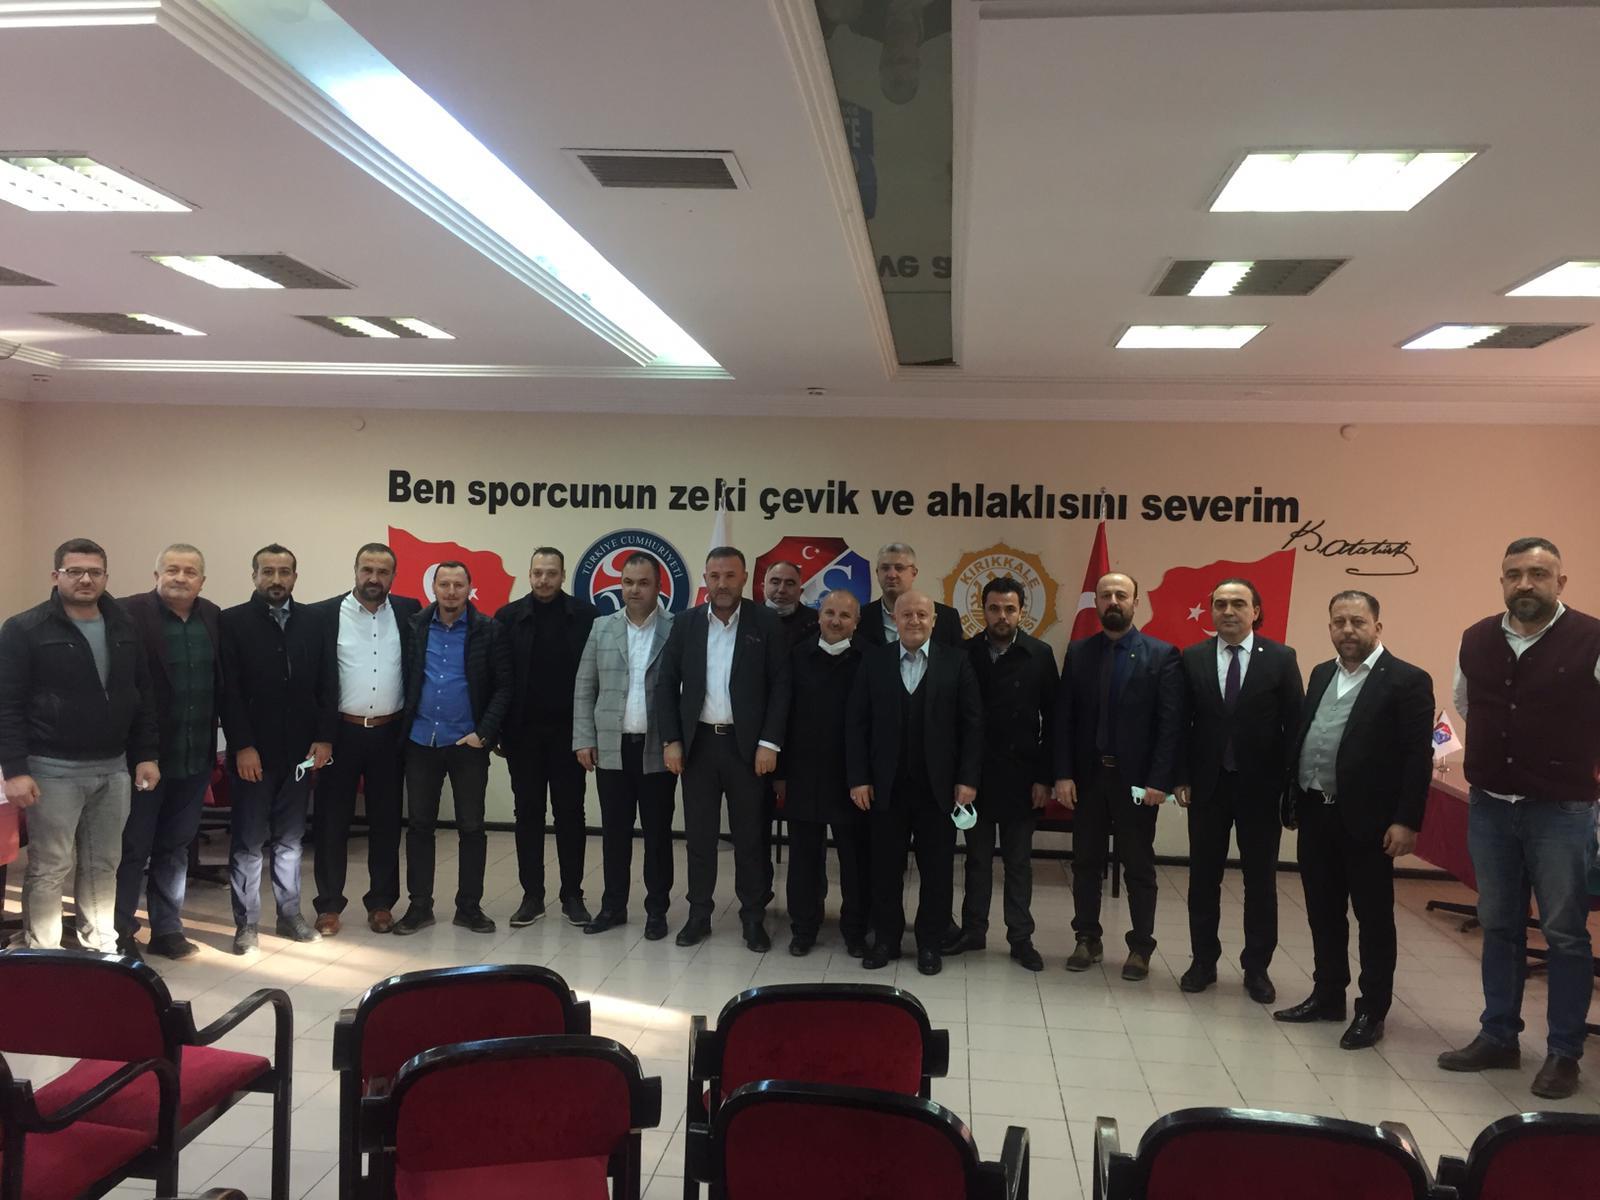 Kırıkkalespor’da Uca Başkan İle Devam - Kırıkkale Haber, Son Dakika Kırıkkale Haberleri